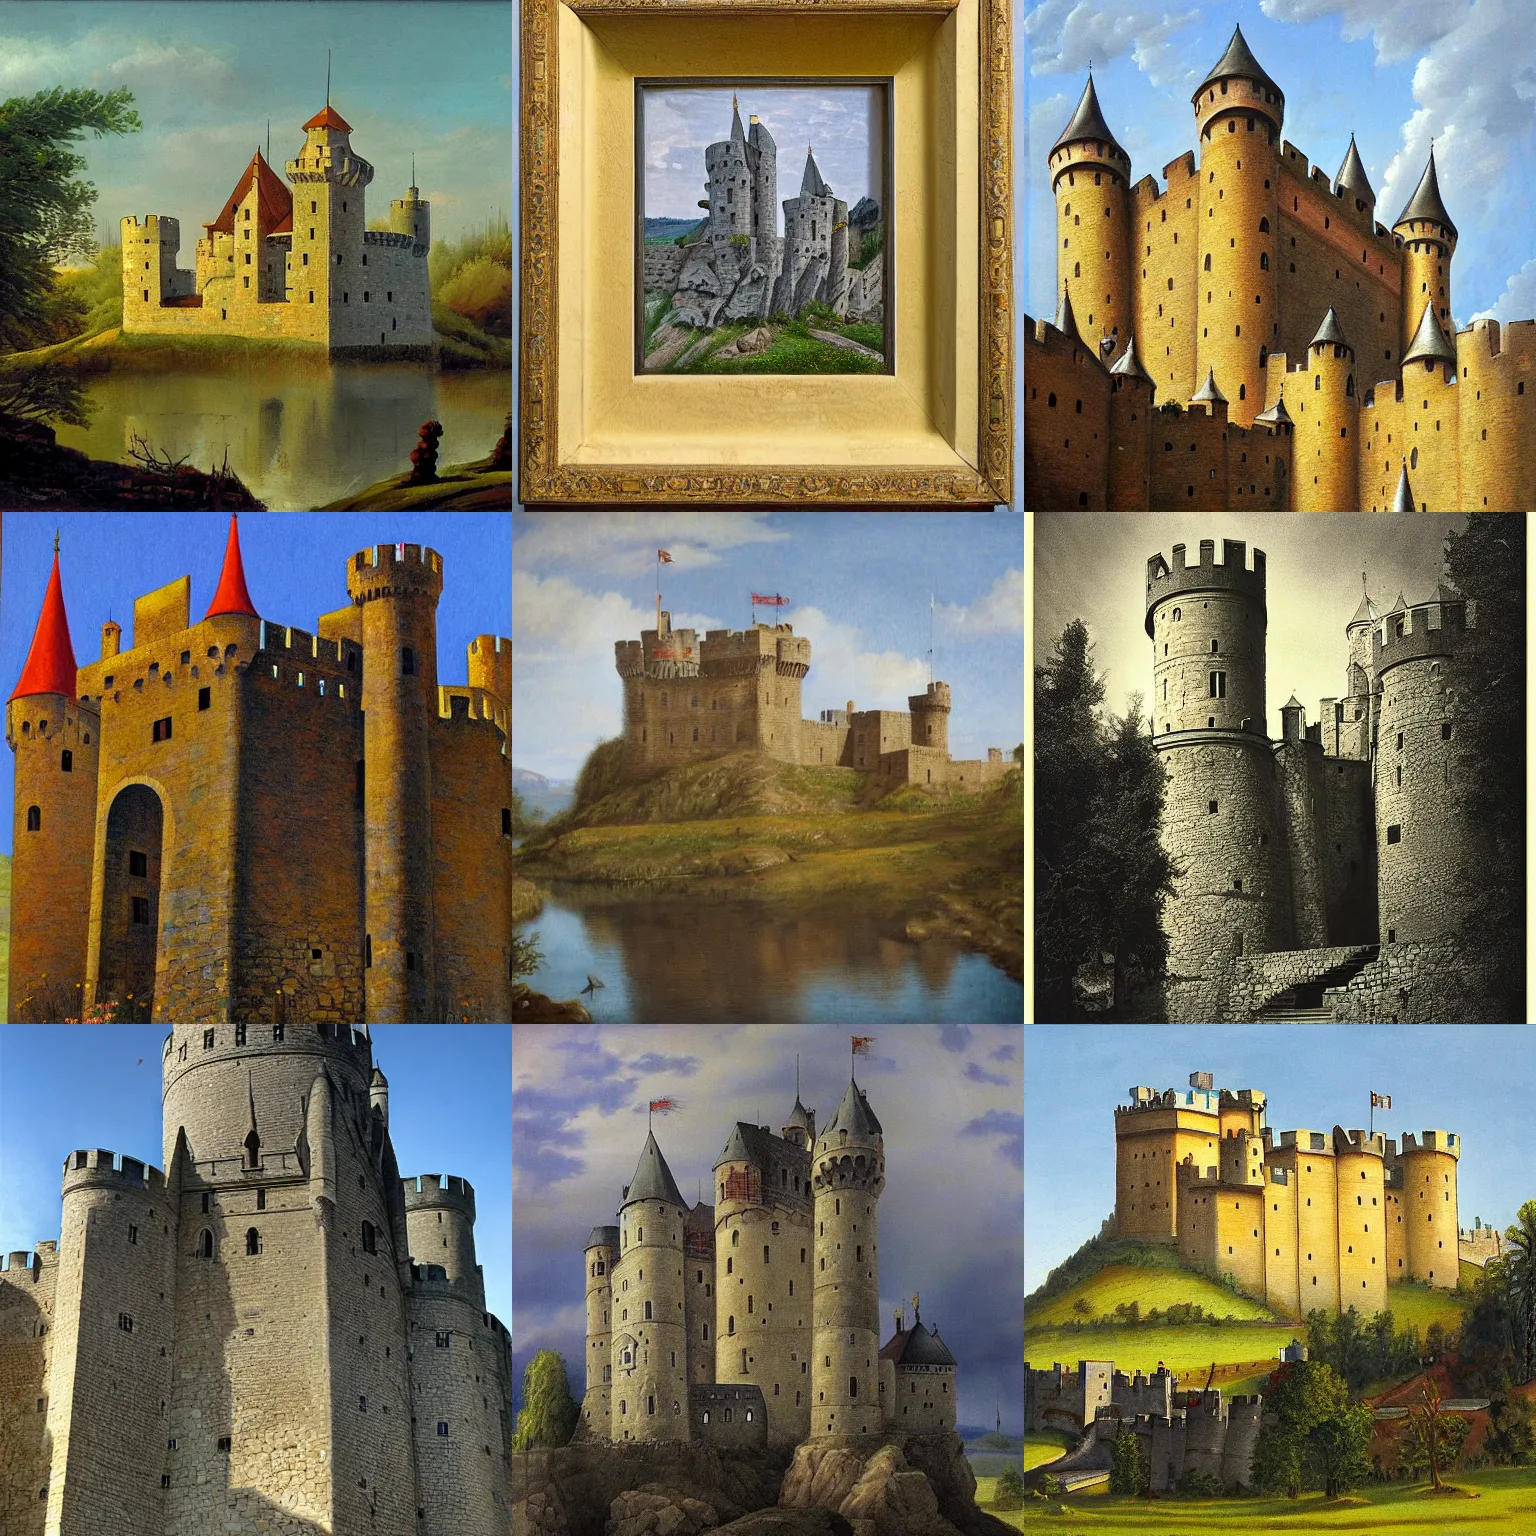 Prompt: medieval castle, by karl hofer